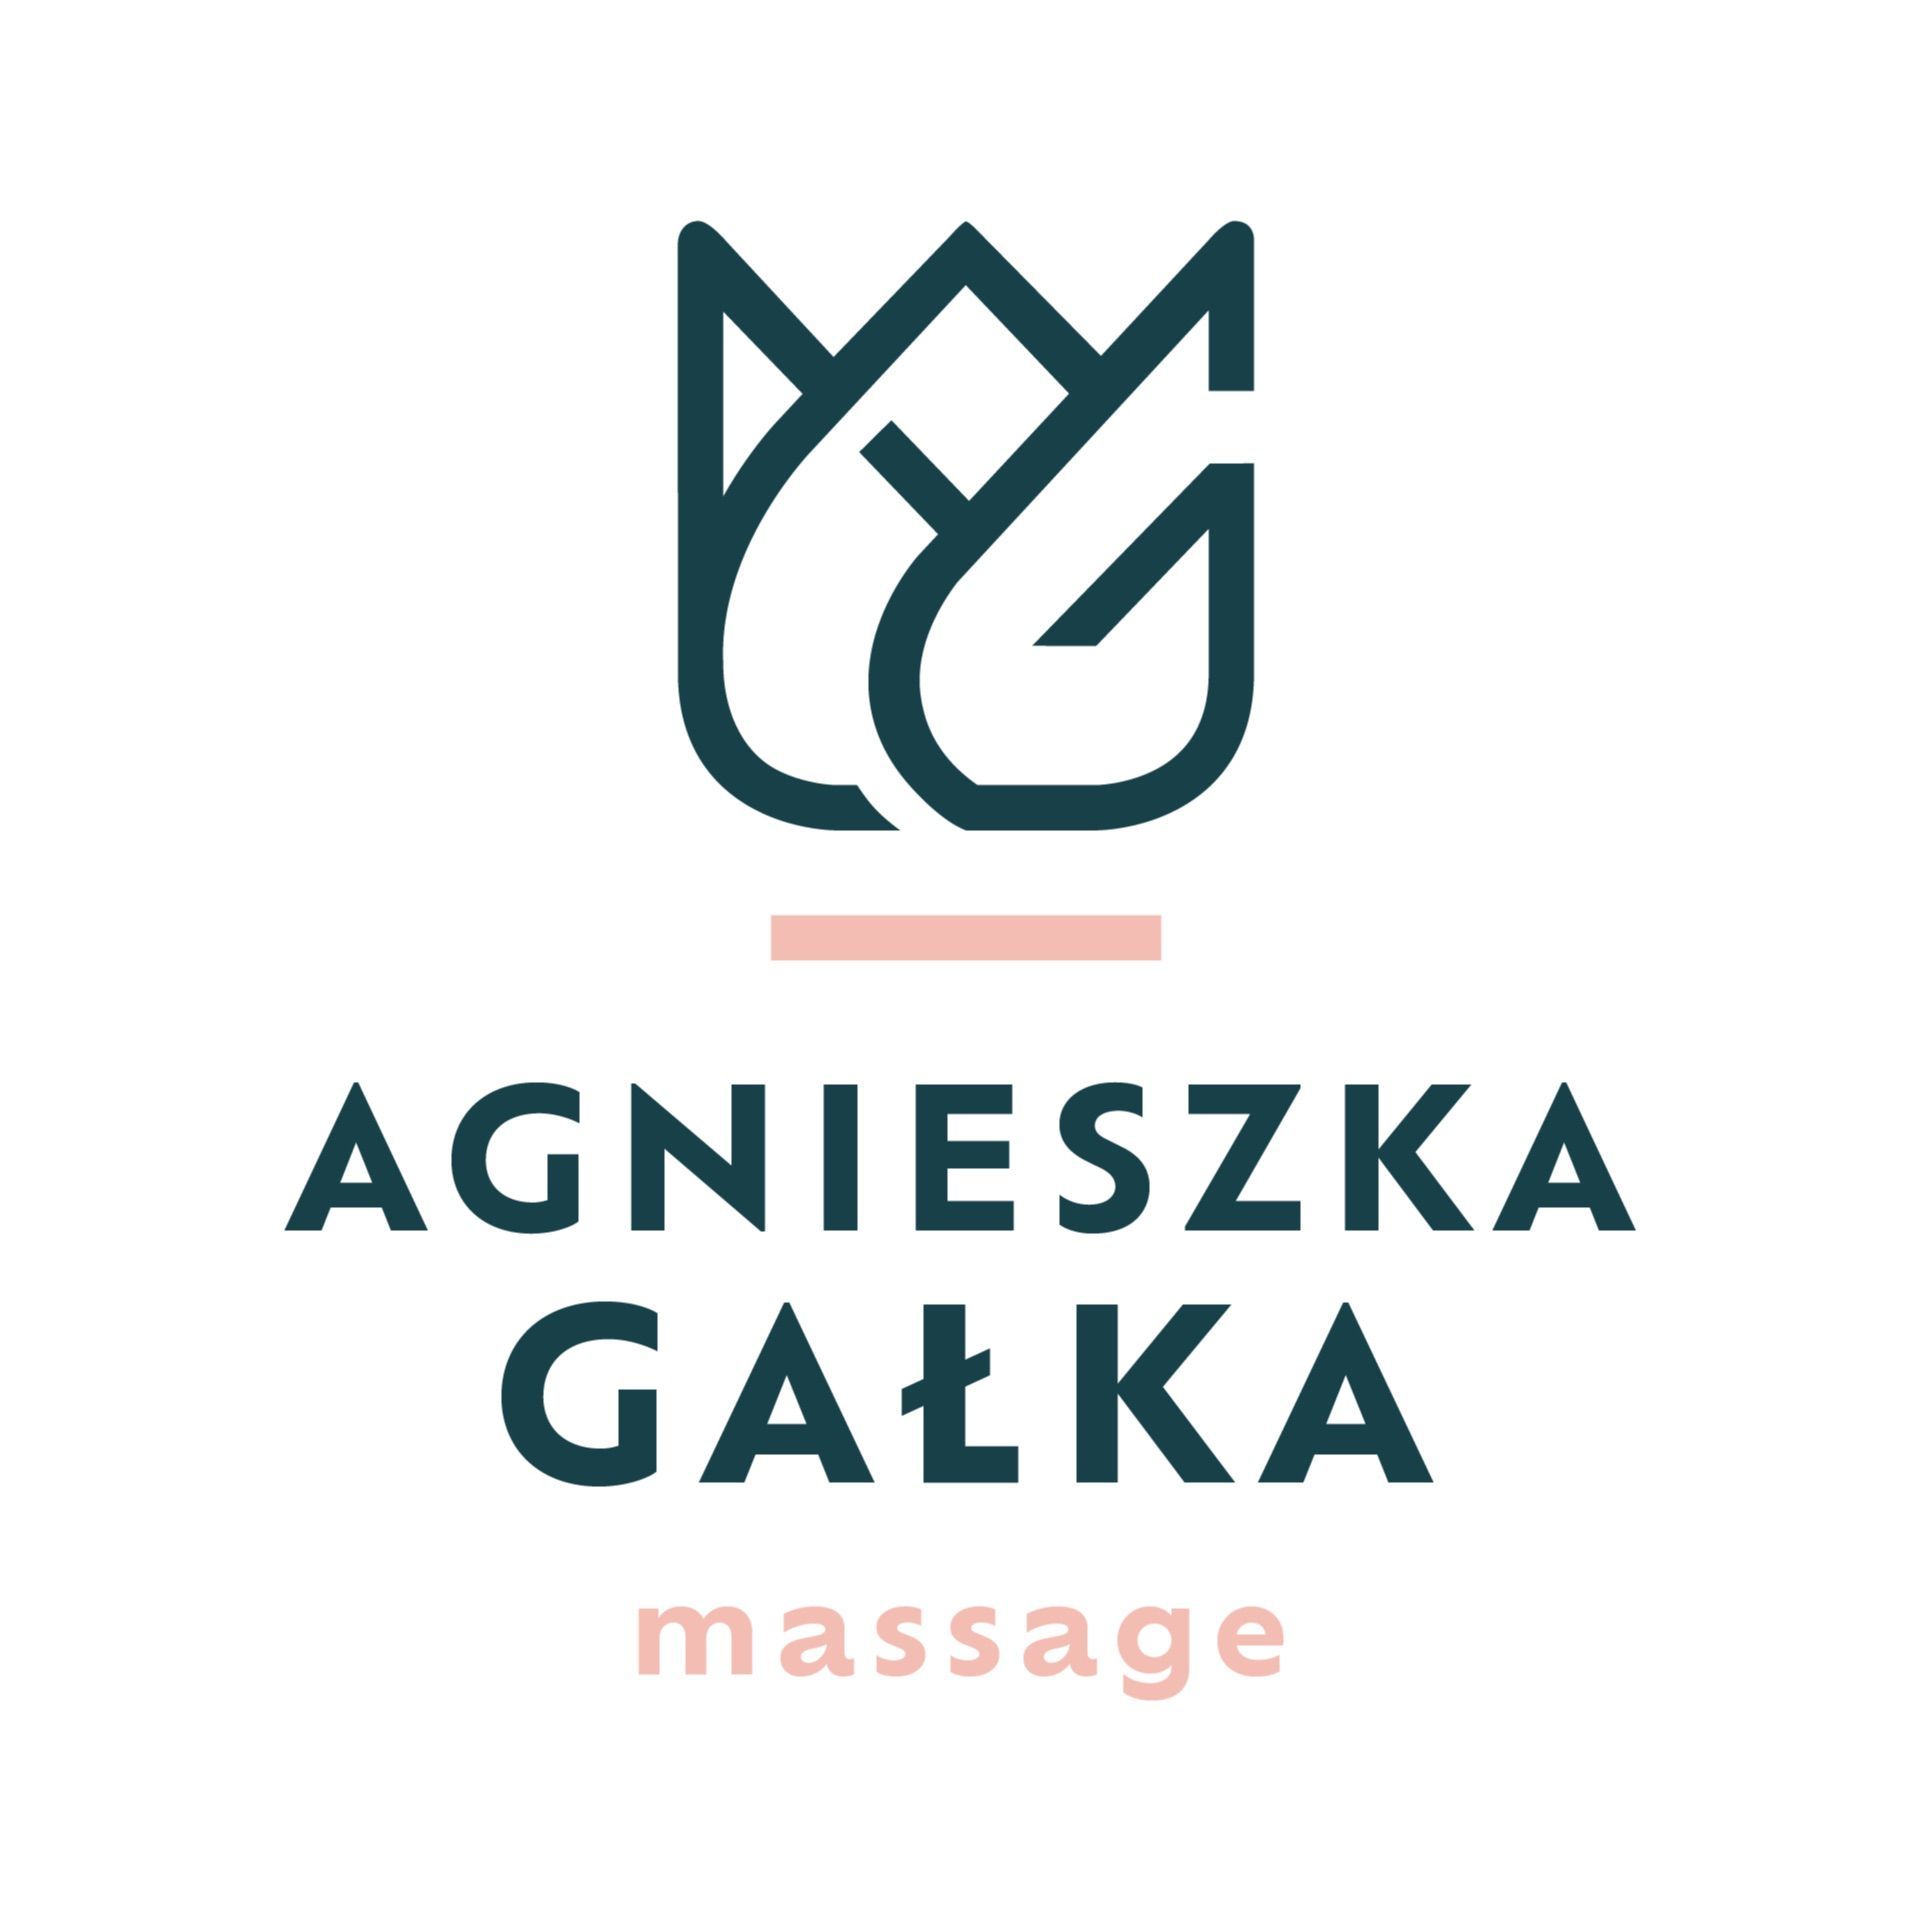 Agnieszka Gałka Massage, osiedle Avia 3, LU 2, 31-878, Kraków, Nowa Huta